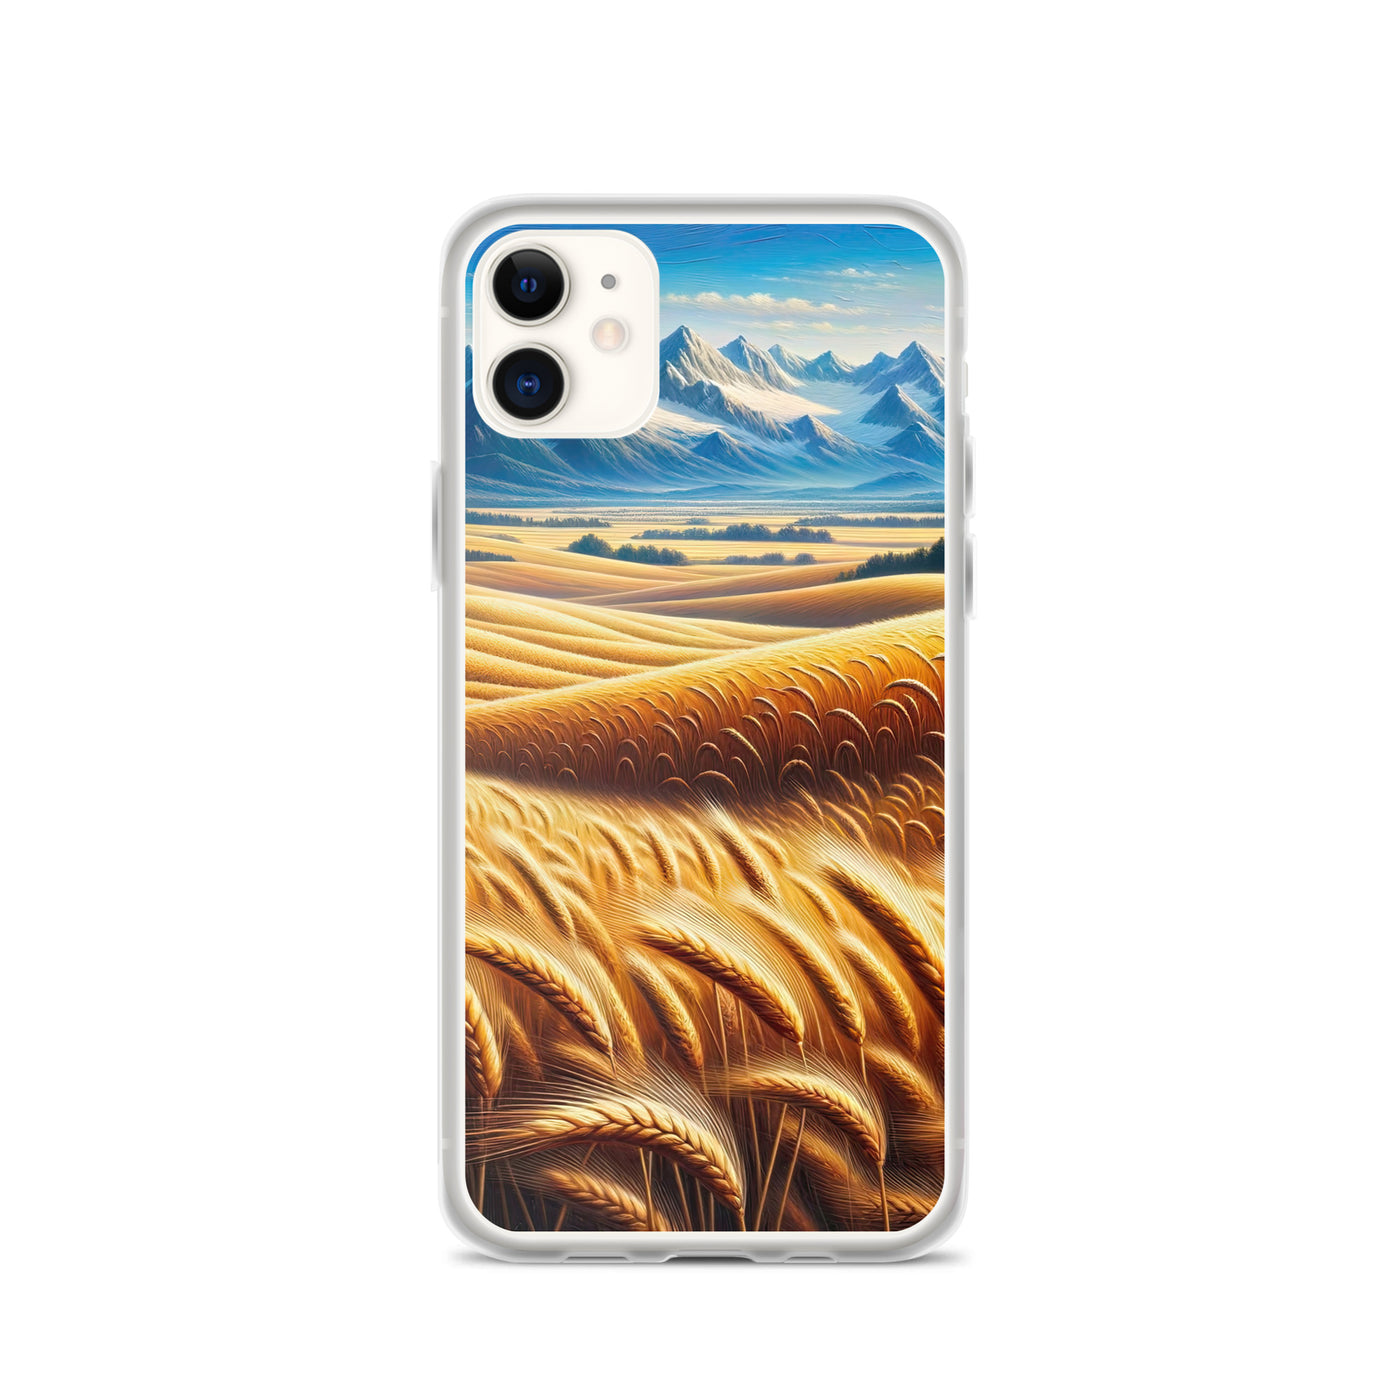 Ölgemälde eines weiten bayerischen Weizenfeldes, golden im Wind (TR) - iPhone Schutzhülle (durchsichtig) xxx yyy zzz iPhone 11